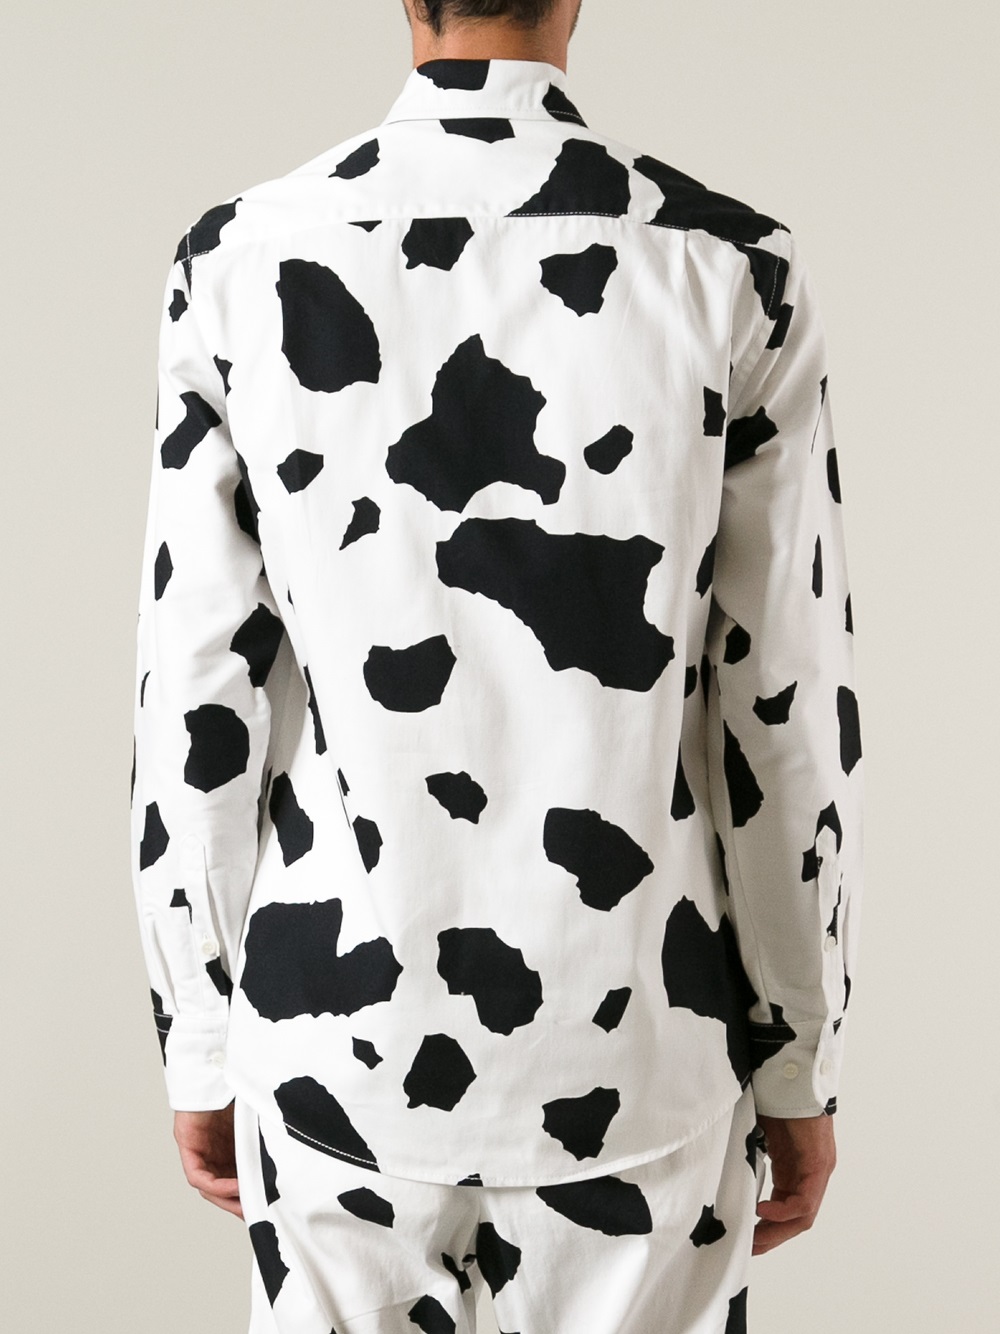 Lyst - Bernhard Willhelm Cow Print Shirt in Black for Men